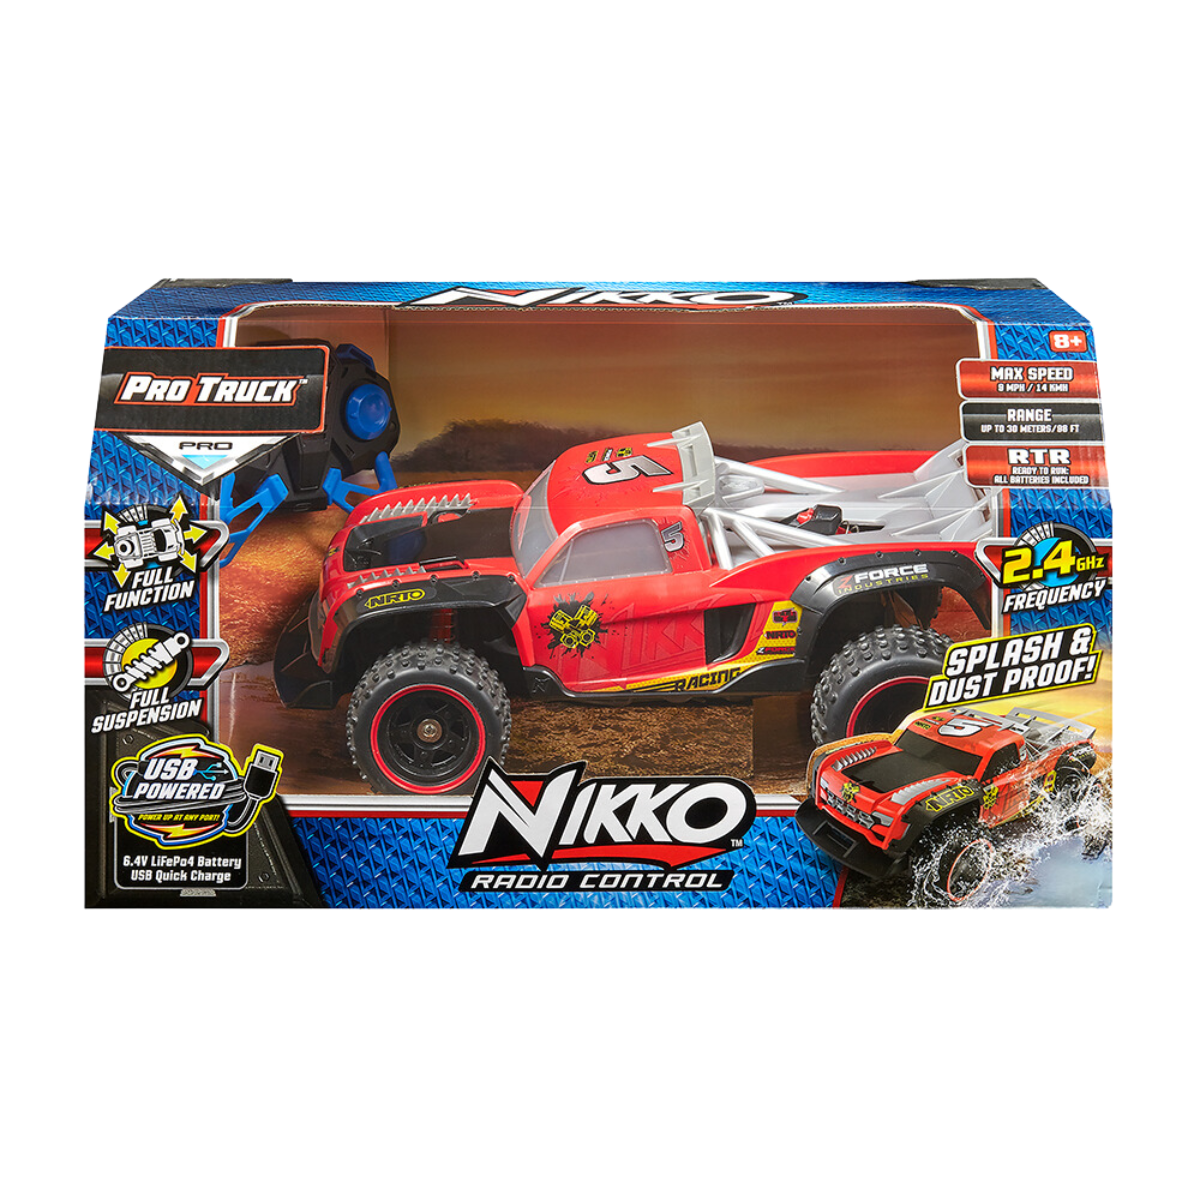 Pro Trucks Nikko Racing #5 R/C